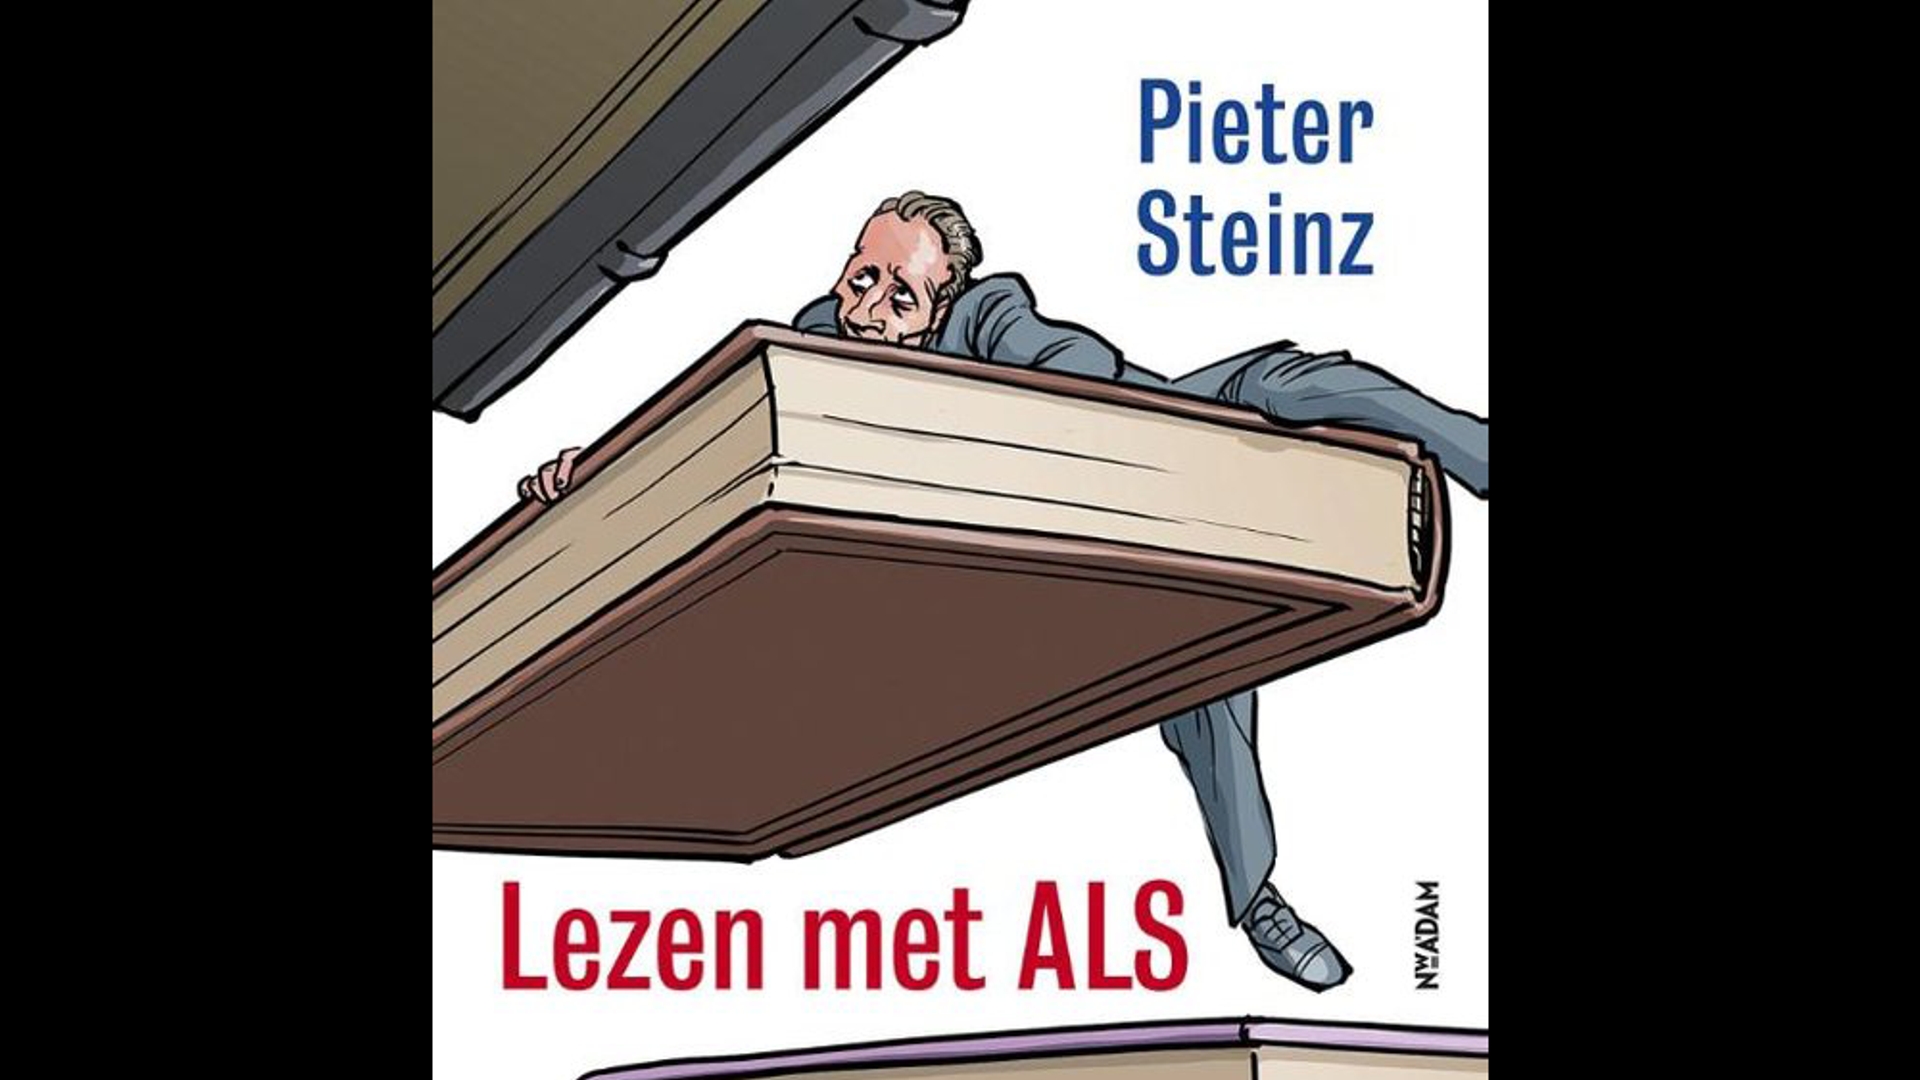 Boek Lezen met ALS